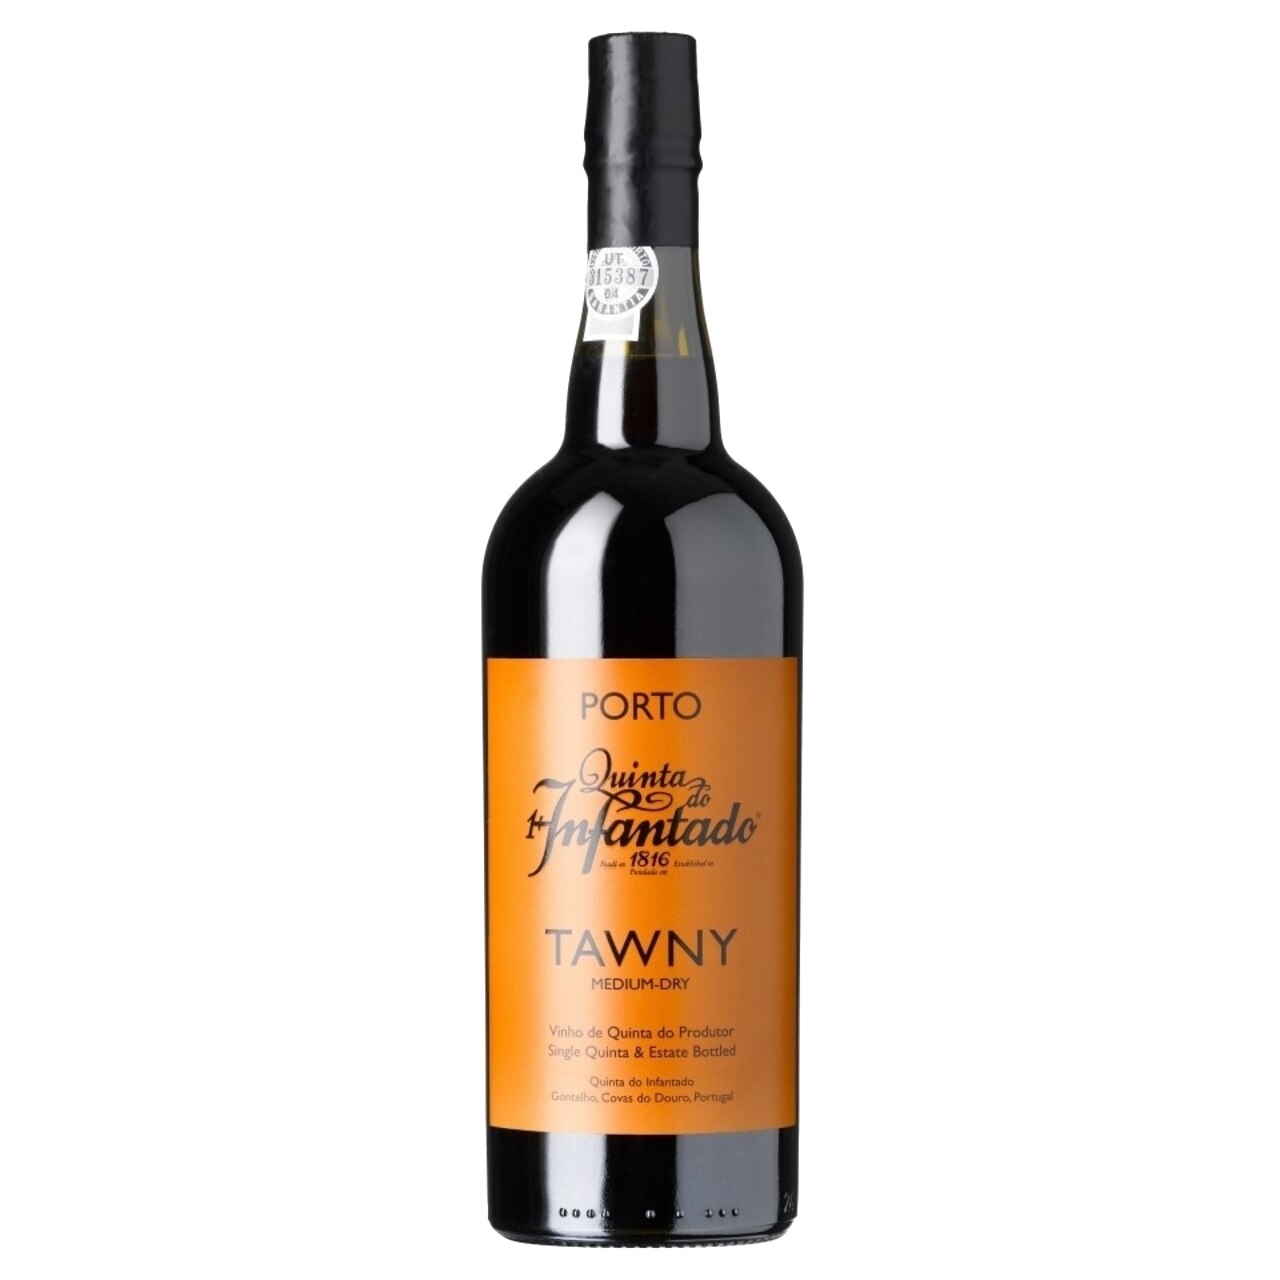 Vin Porto Quinta Tawny vol. alc. 19,5% 0.75l